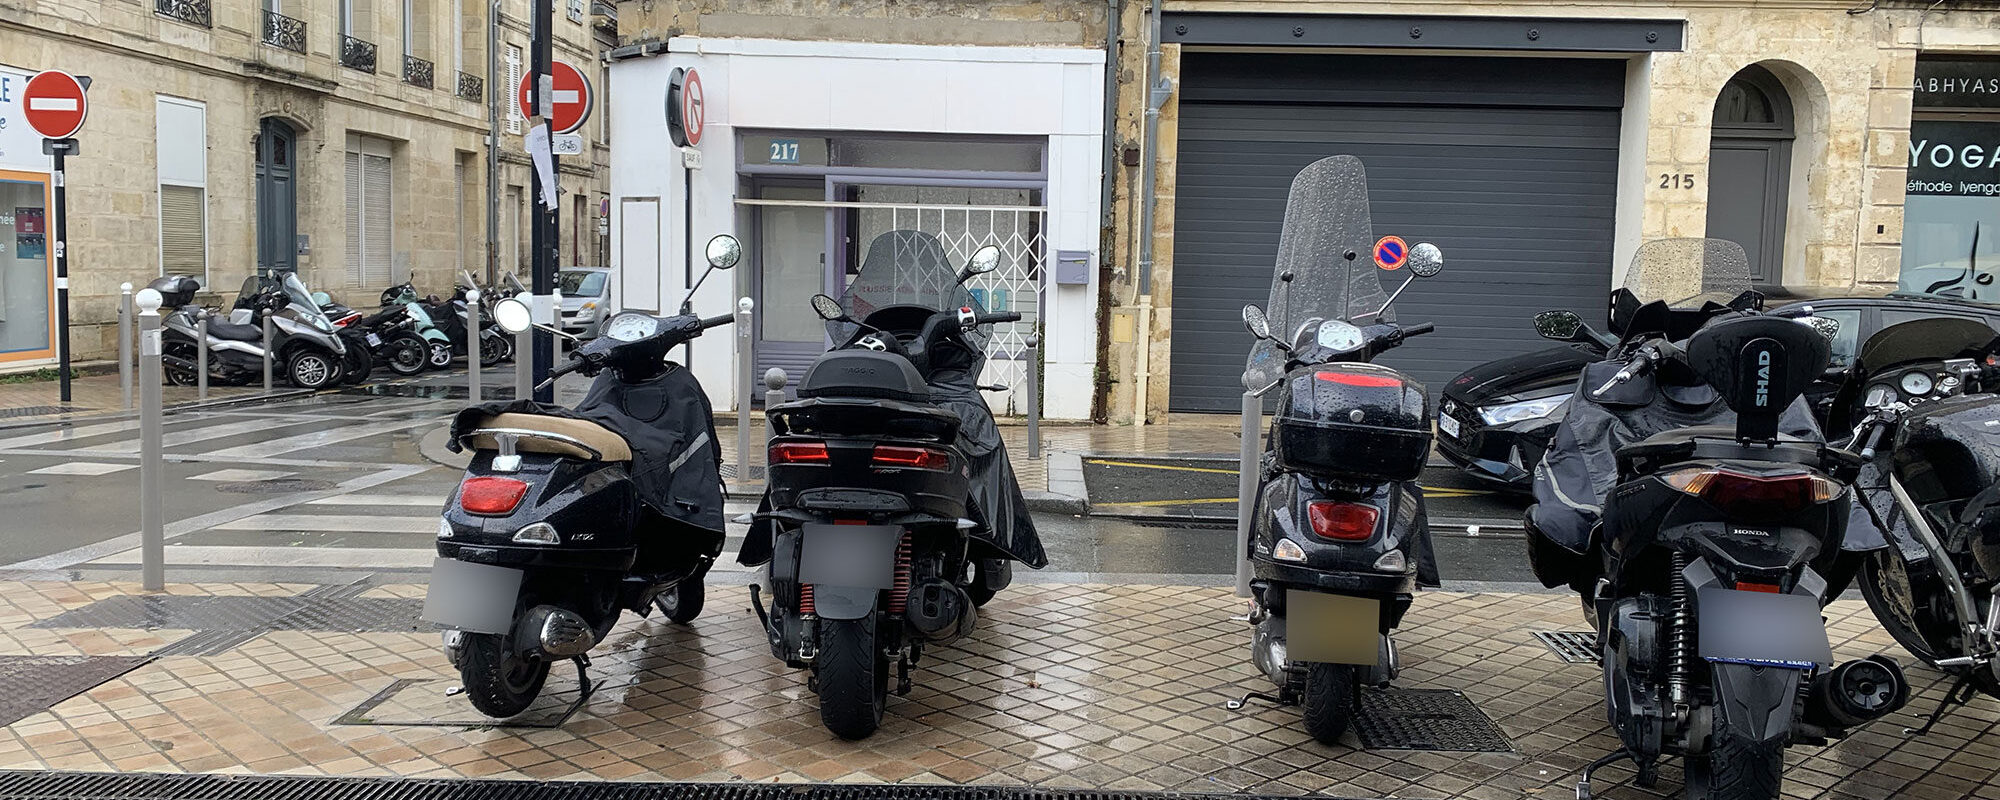 Face à l’afflux de motos et scooters, Bordeaux cherche un cadre